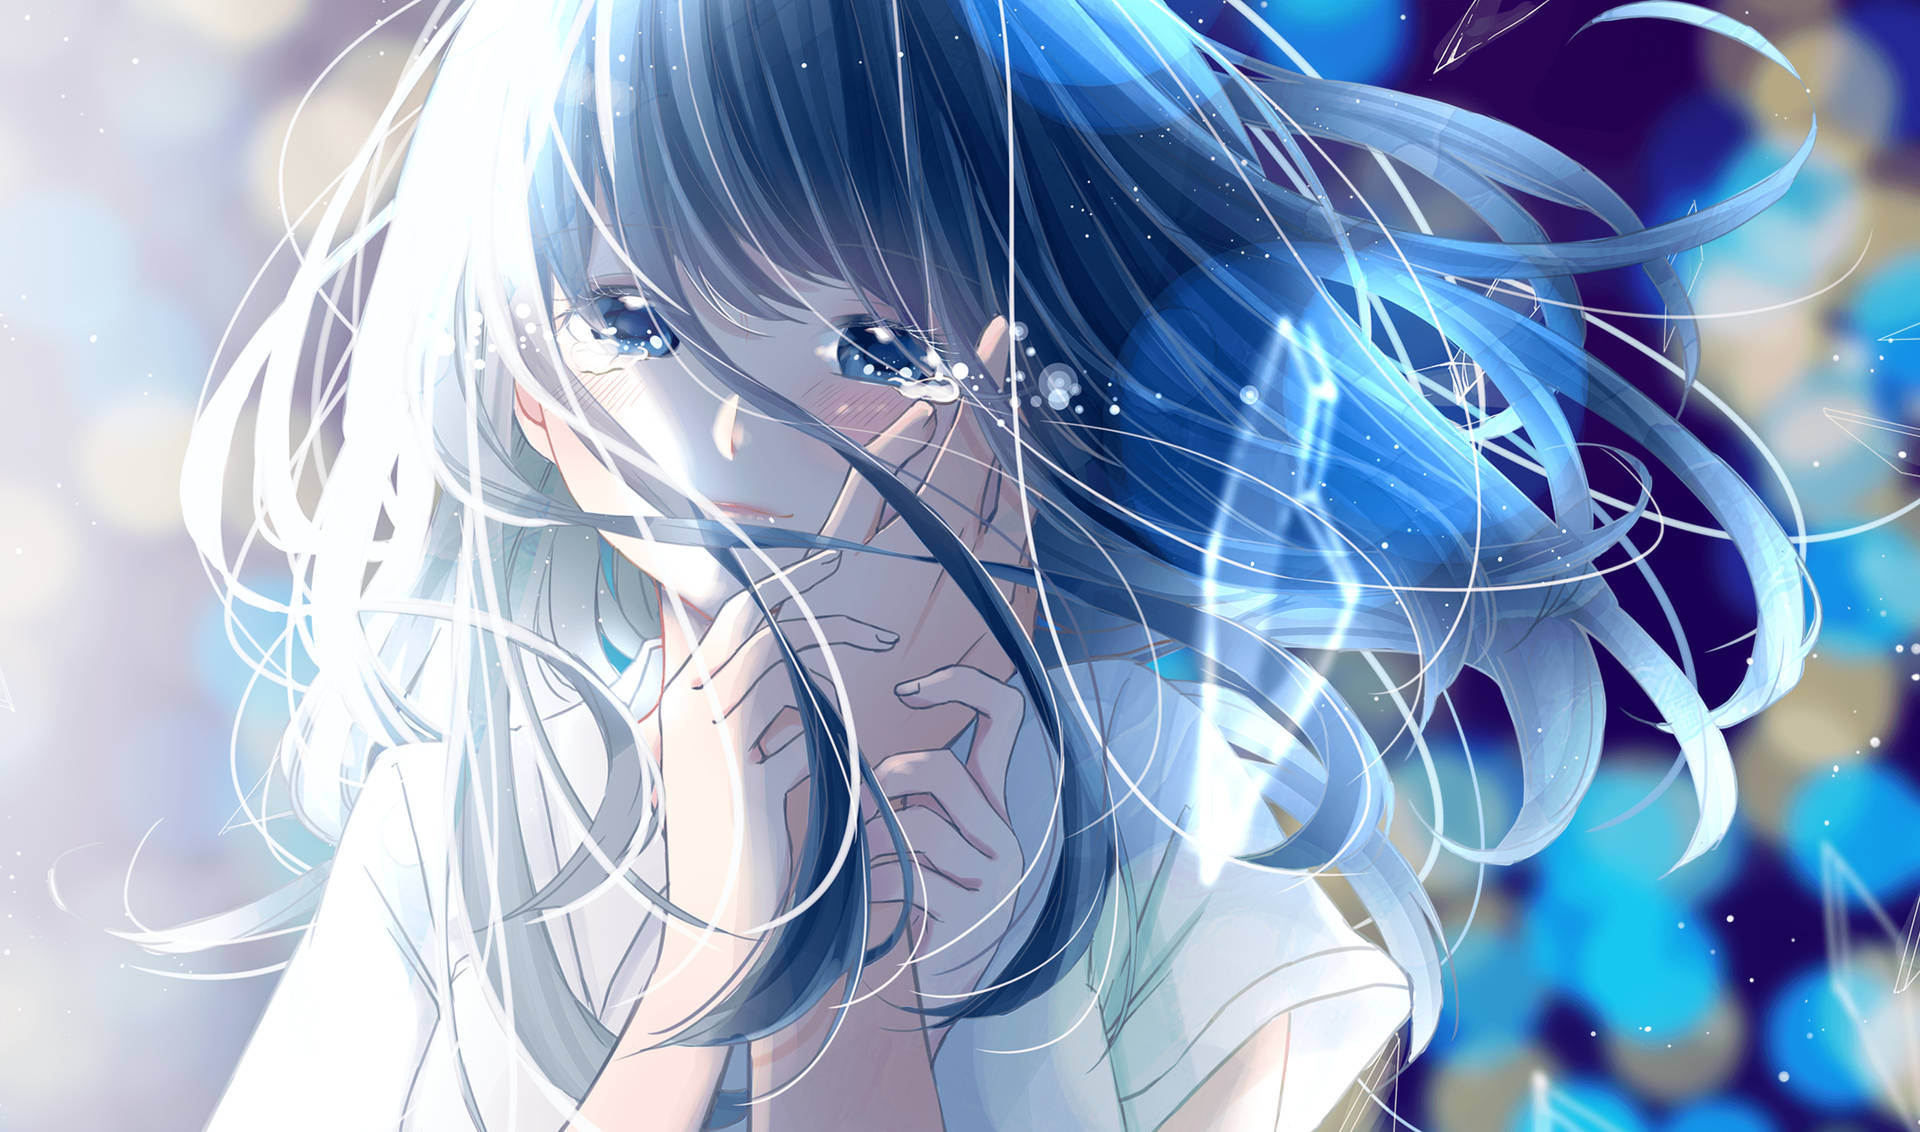 Sad Anime Girl Sparkling Lights Background